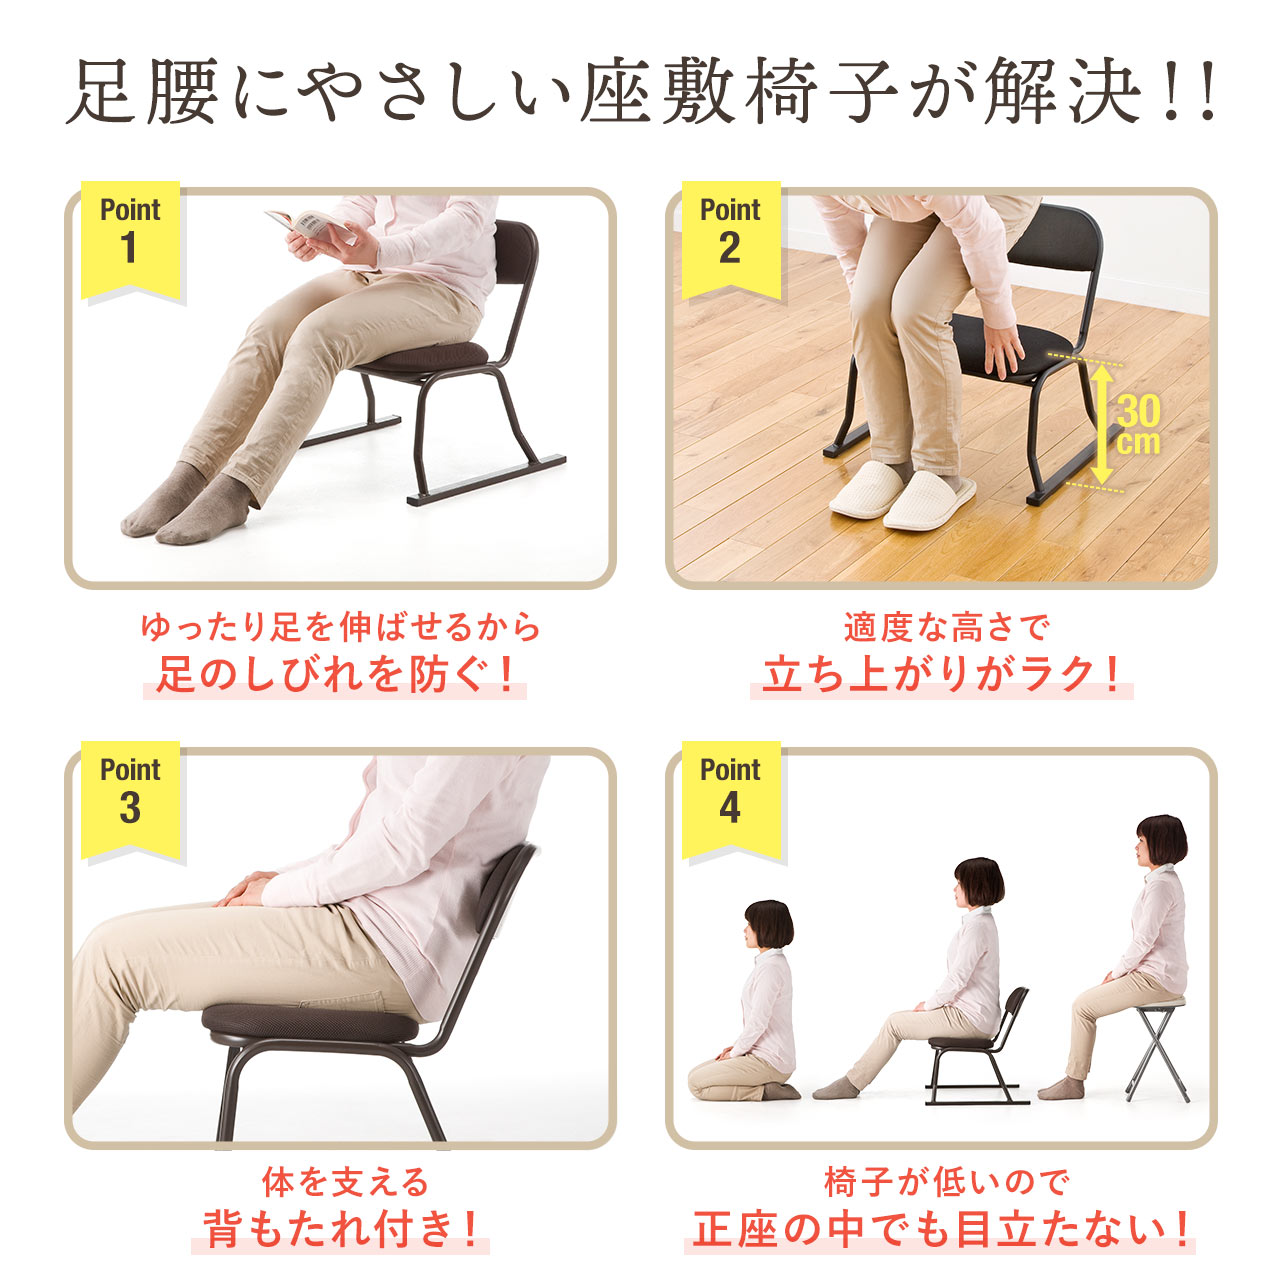 座敷椅子 高座椅子 和室 腰痛対策 スタッキング可能 4脚セット 150 